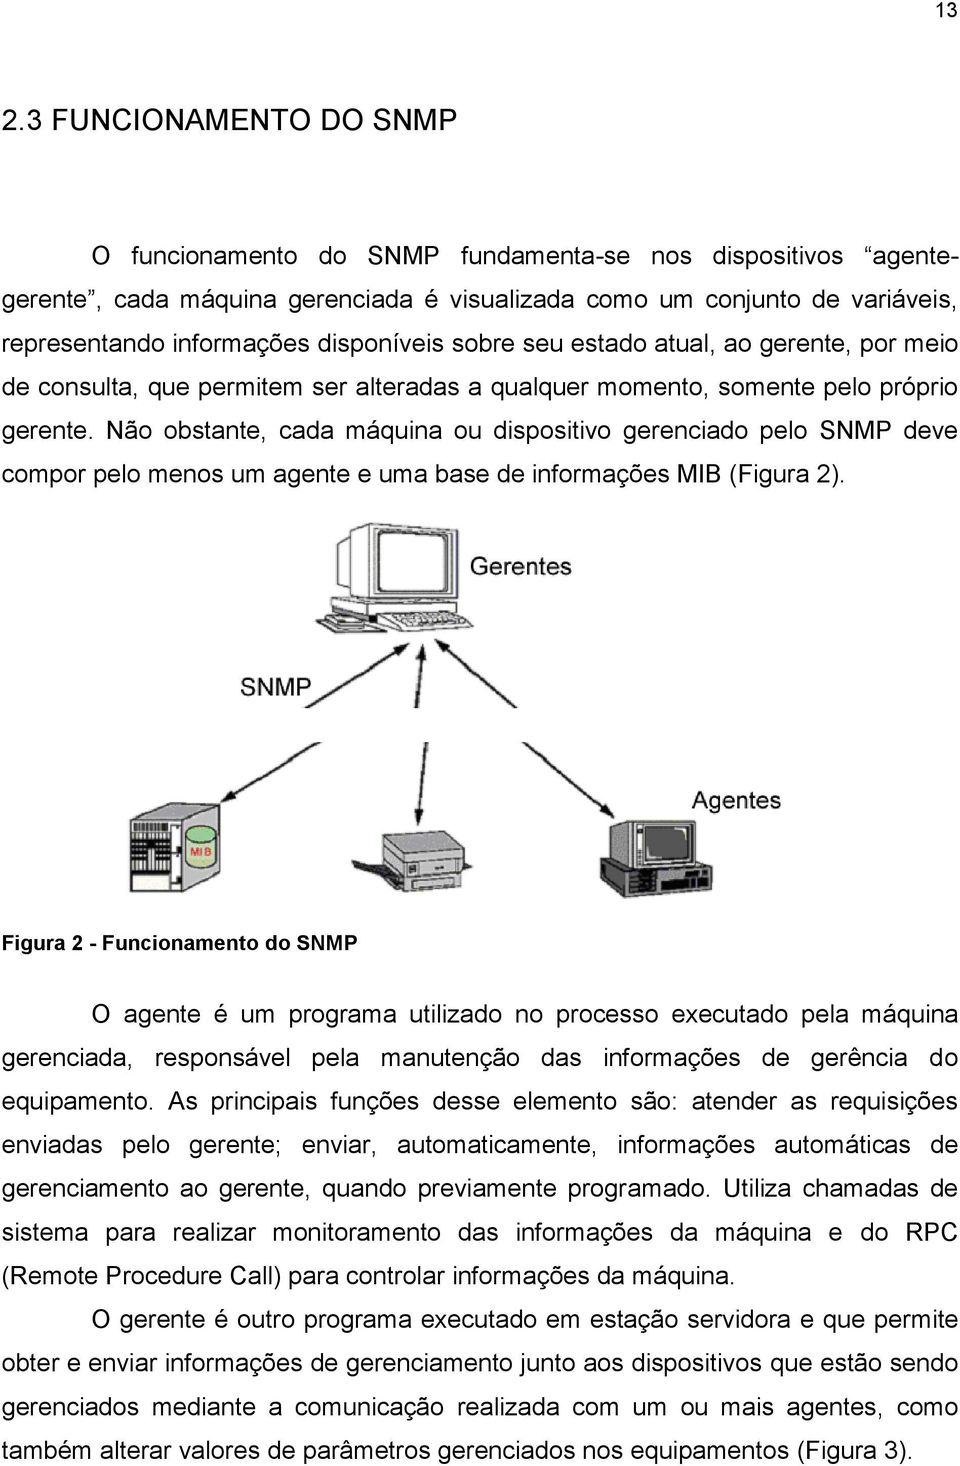 Não obstante, cada máquina ou dispositivo gerenciado pelo SNMP deve compor pelo menos um agente e uma base de informações MIB (Figura 2).